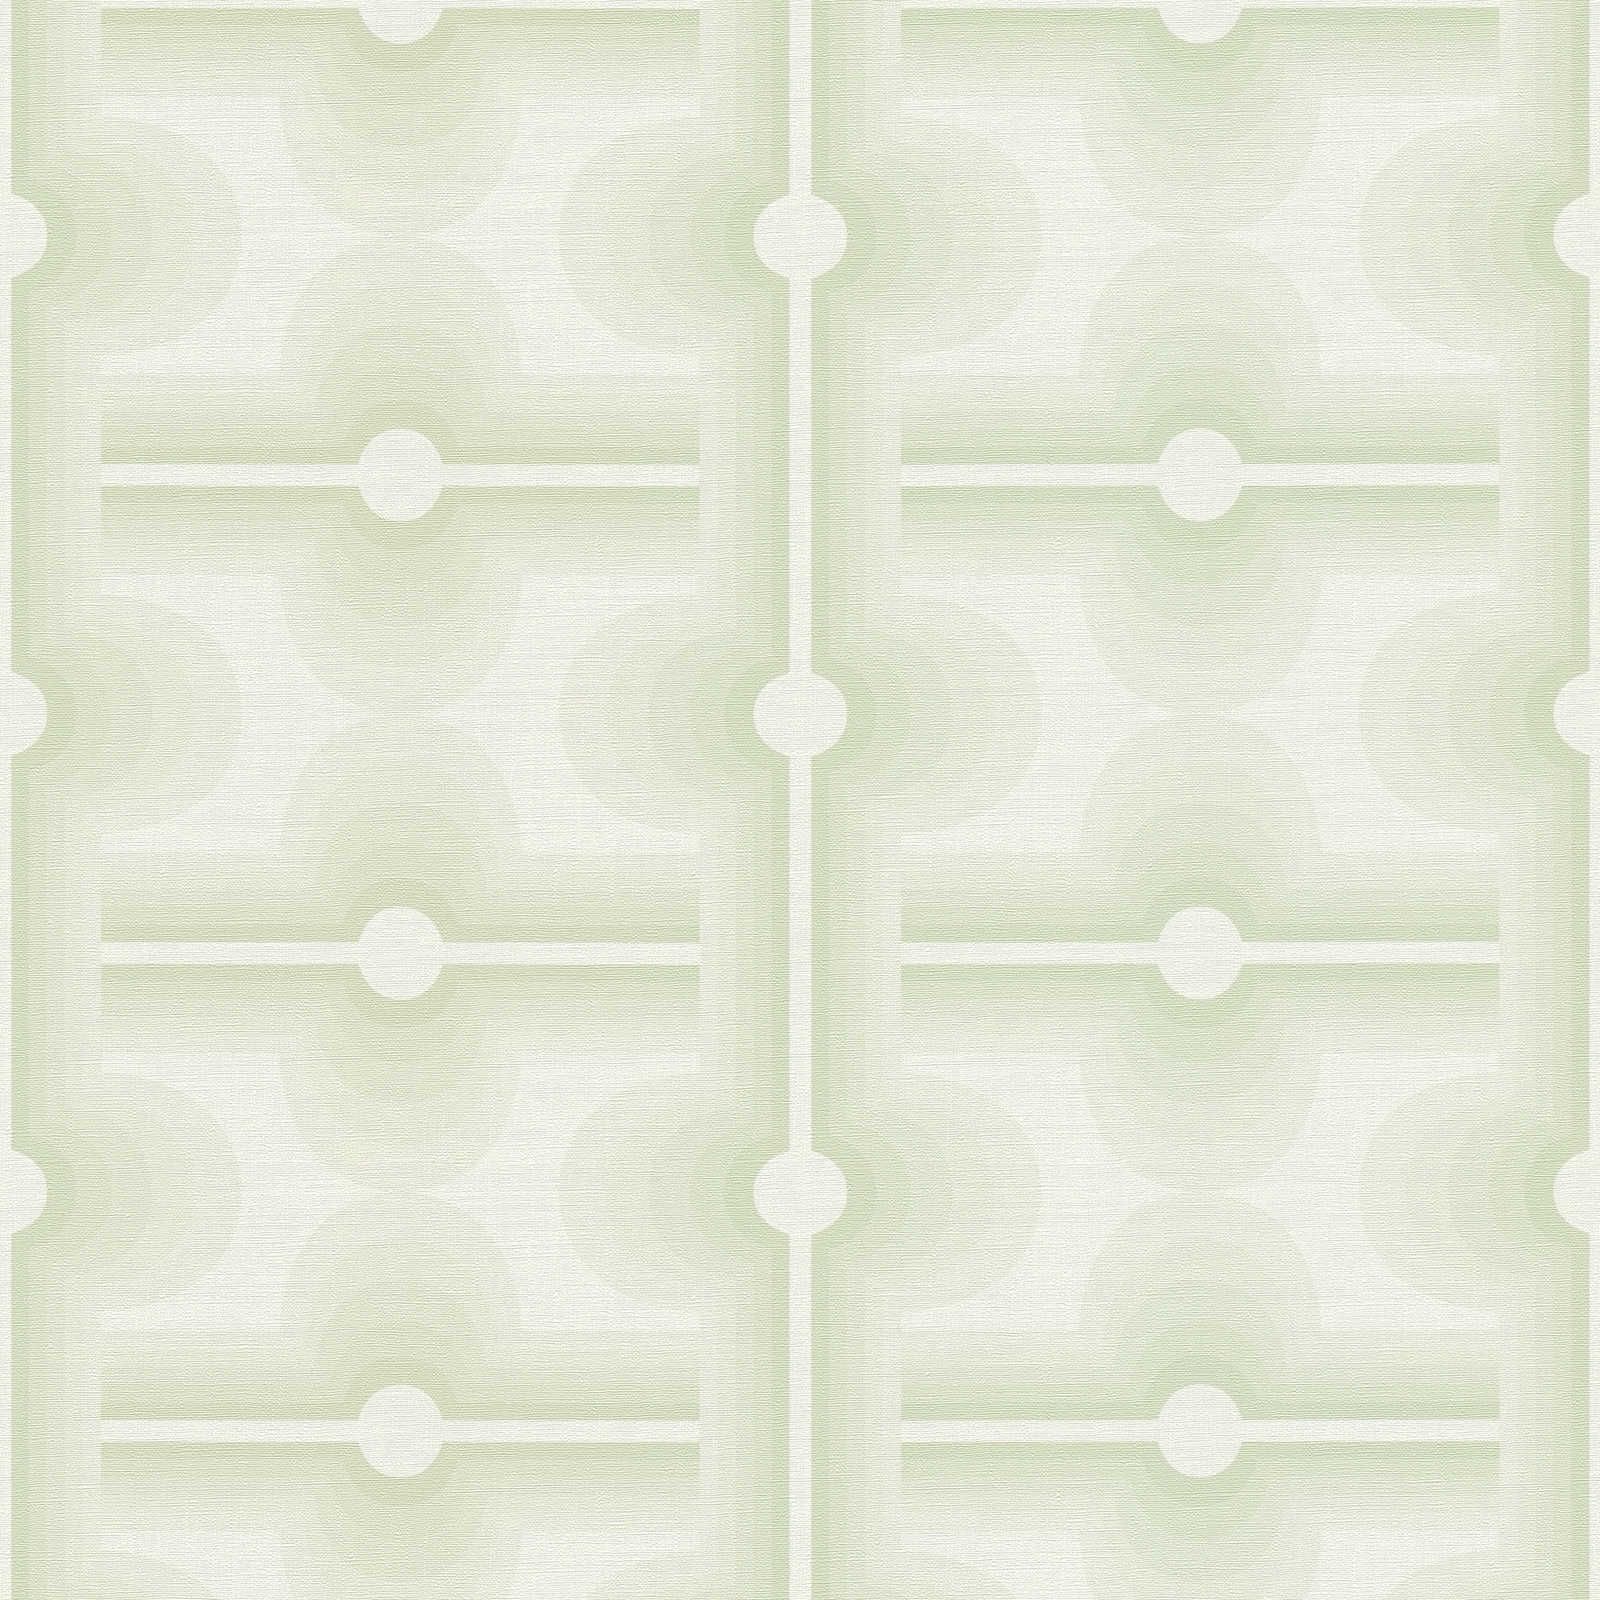 Motivo retro en papel pintado no tejido de color verde pálido - verde, crema
